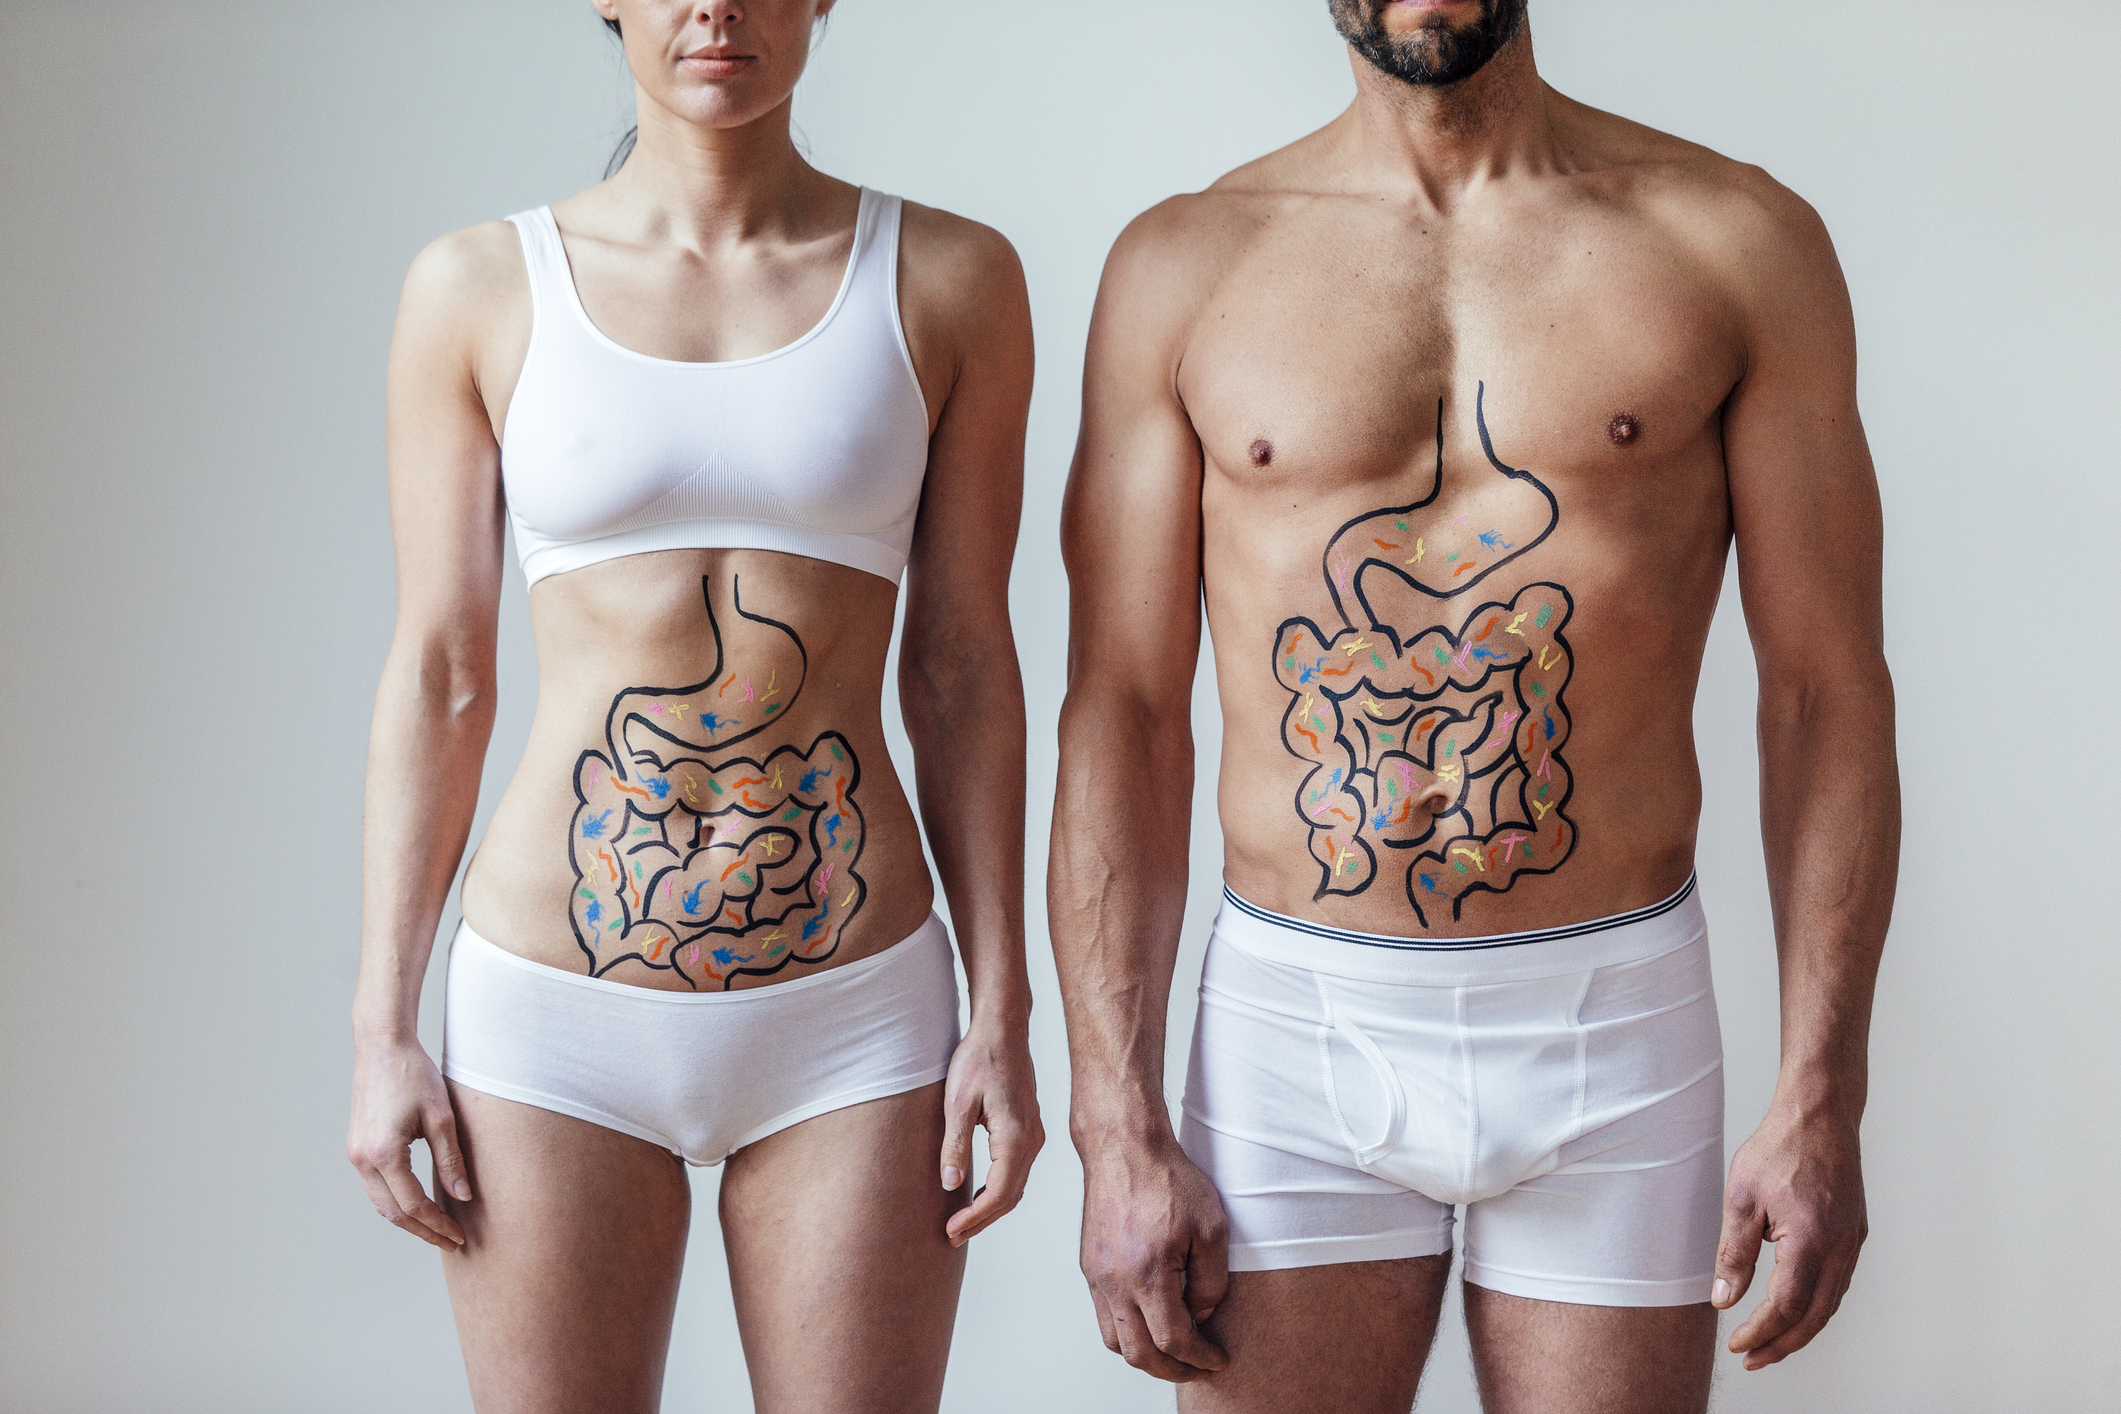 Quand on pense aux intestins, on pense directement au processus de digestion. Mais lorsqu’il est question des intestins, leur rôle va beaucoup, beaucoup plus loin. Découvrez 10 faits surprenants sur les intestins!